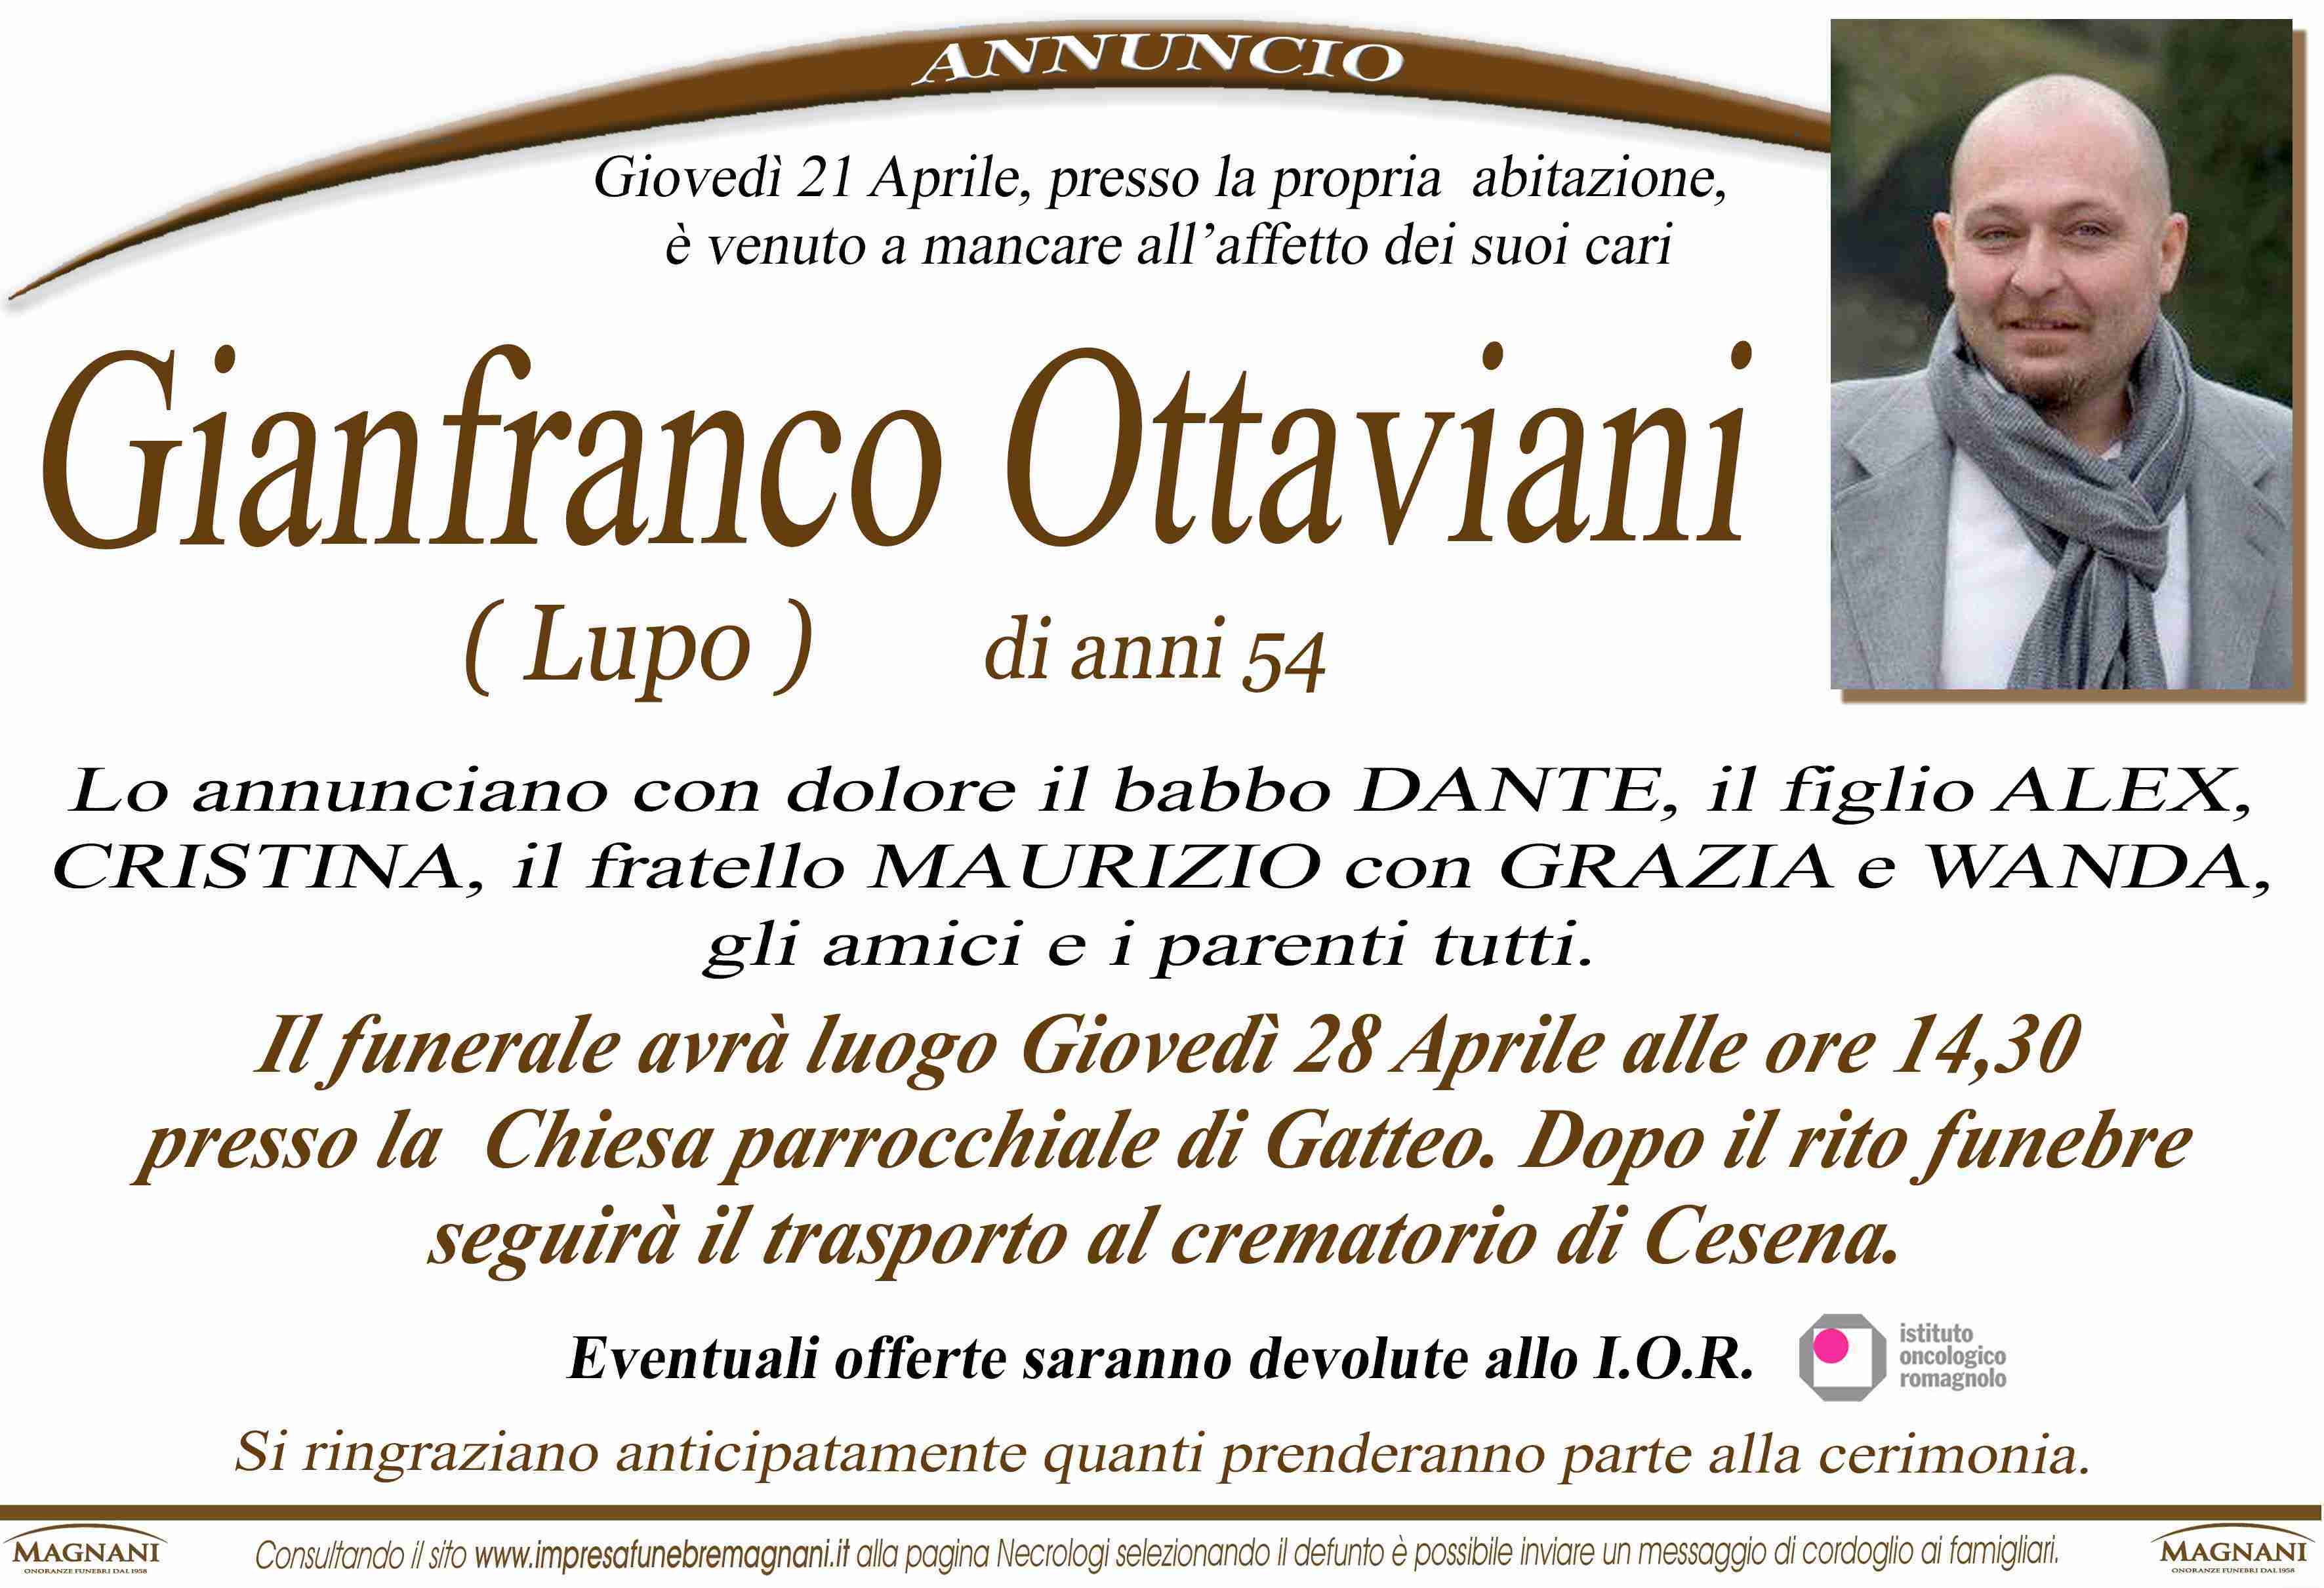 Gianfranco Ottaviani